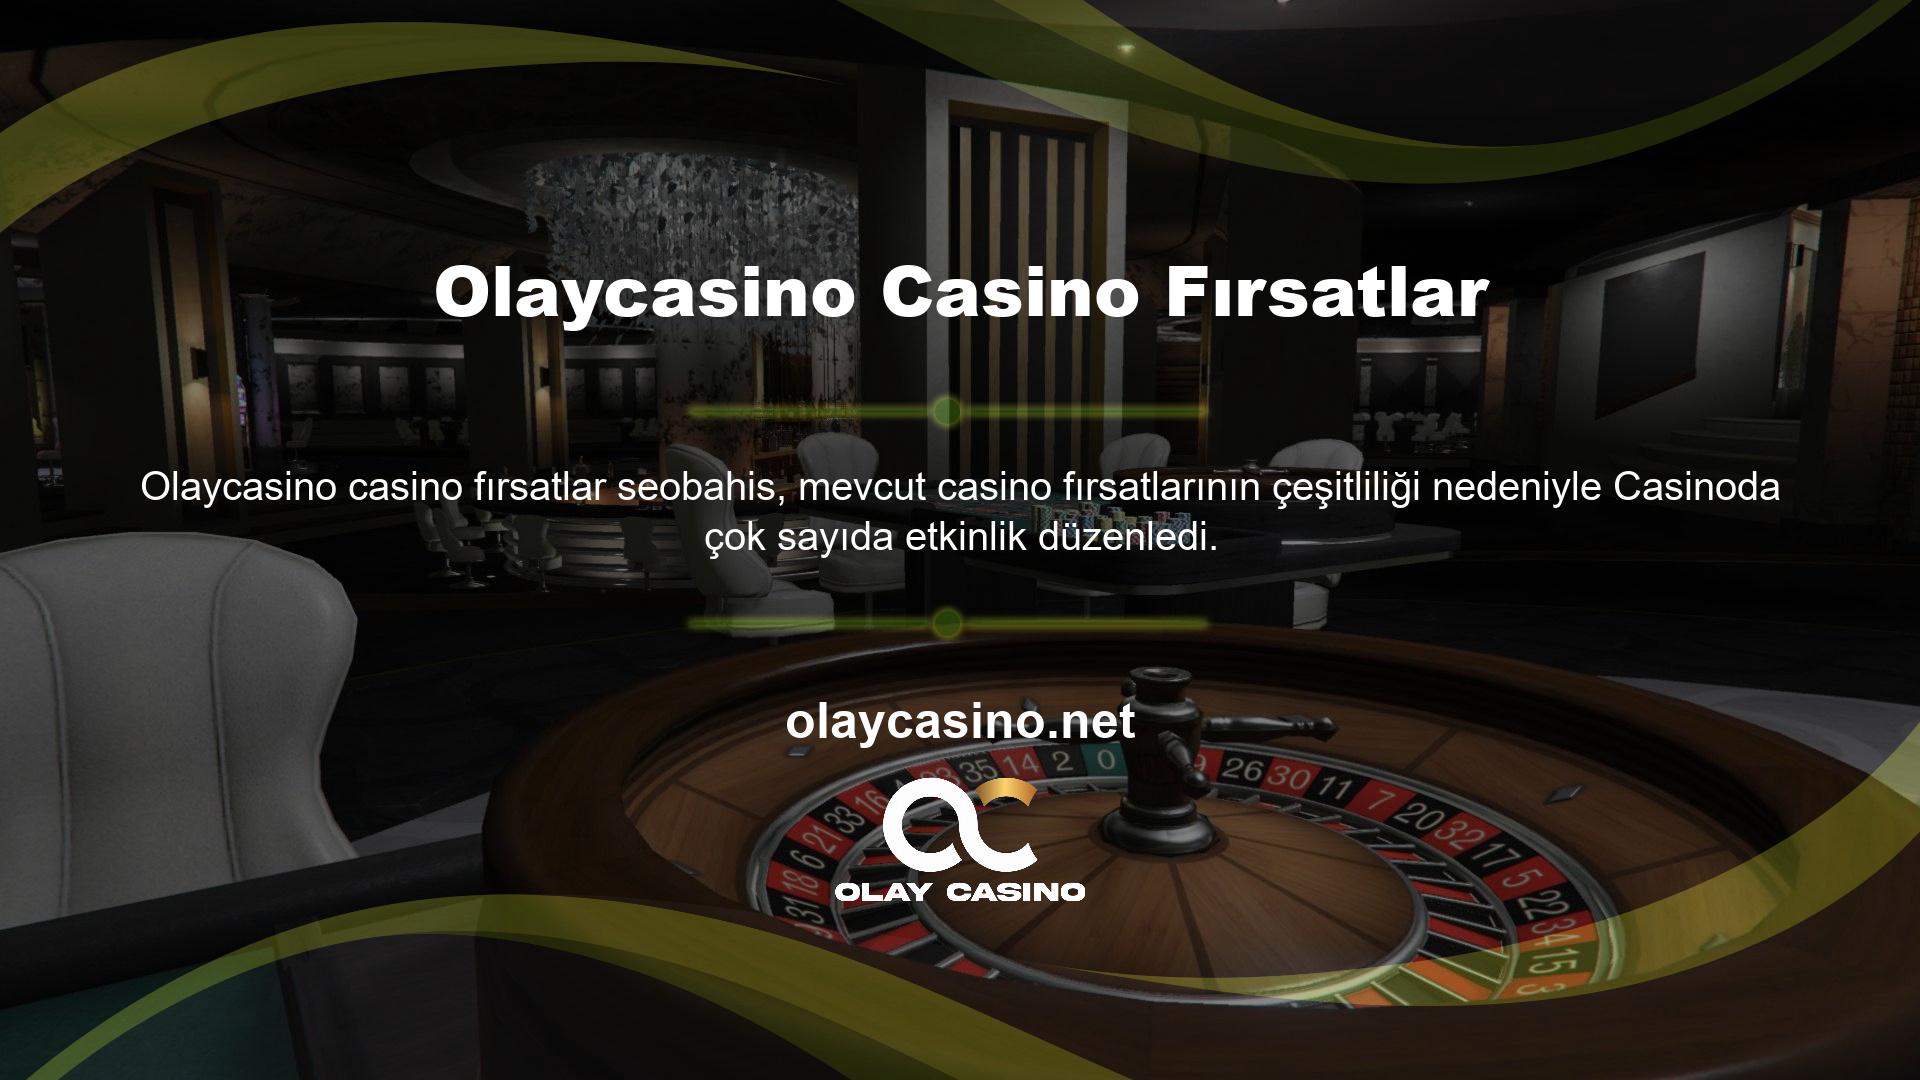 Bu aktiviteler oyun içi kayıpları telafi edebilir ve oyuncular tarafından gerçek zamanlı casinolarda veya diğer çevrimiçi casino platformlarında kullanılabilir